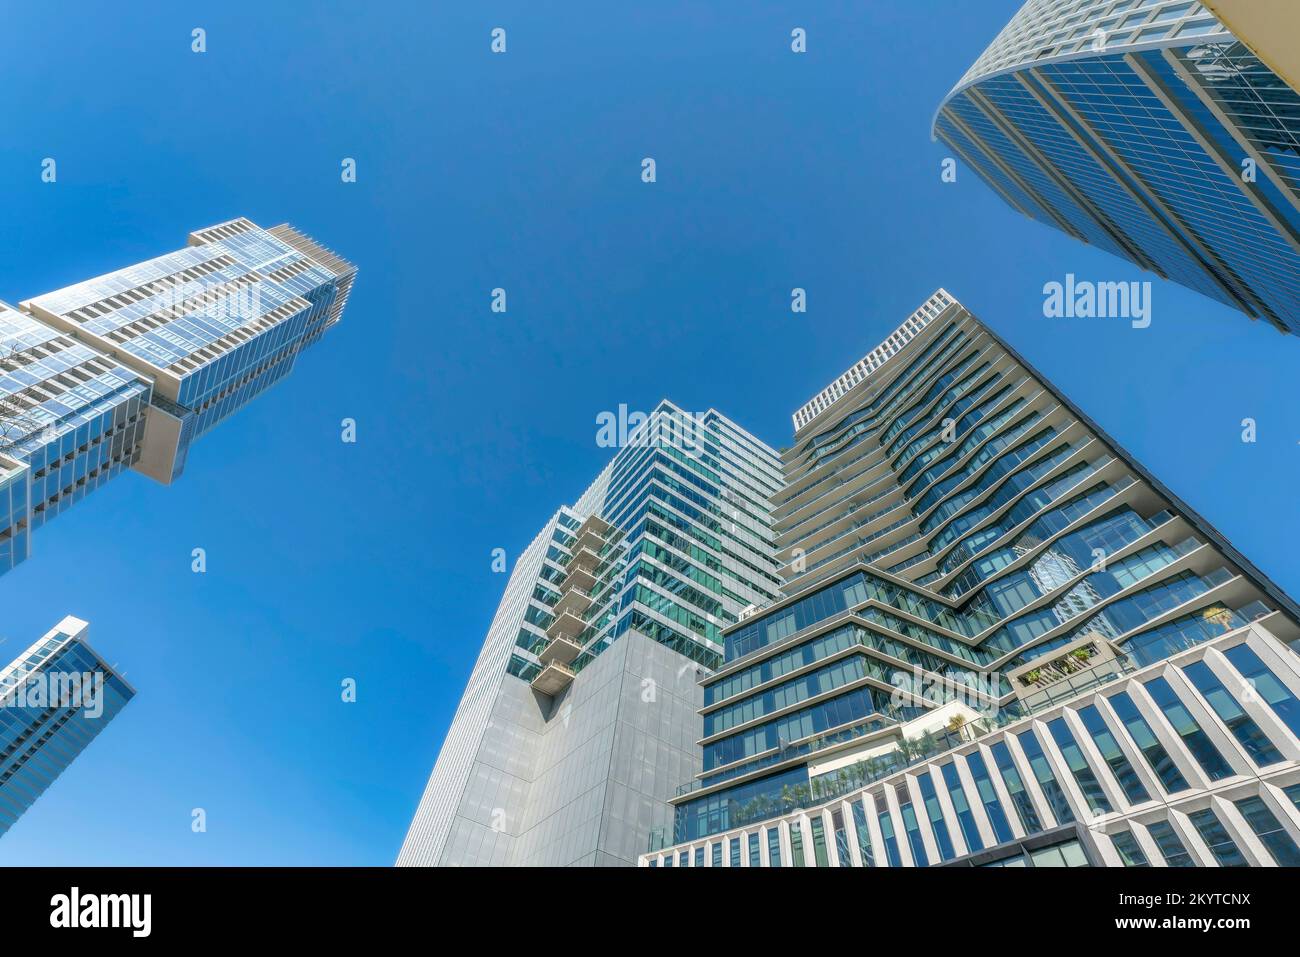 Austin, Texas: Moderne Wohntürme mit Blick aus einem niedrigen Winkel. Benachbarte Wolkenkratzer mit Balkonen und Glasfassade vor dem Hintergrund des blauen Himmels Stockfoto